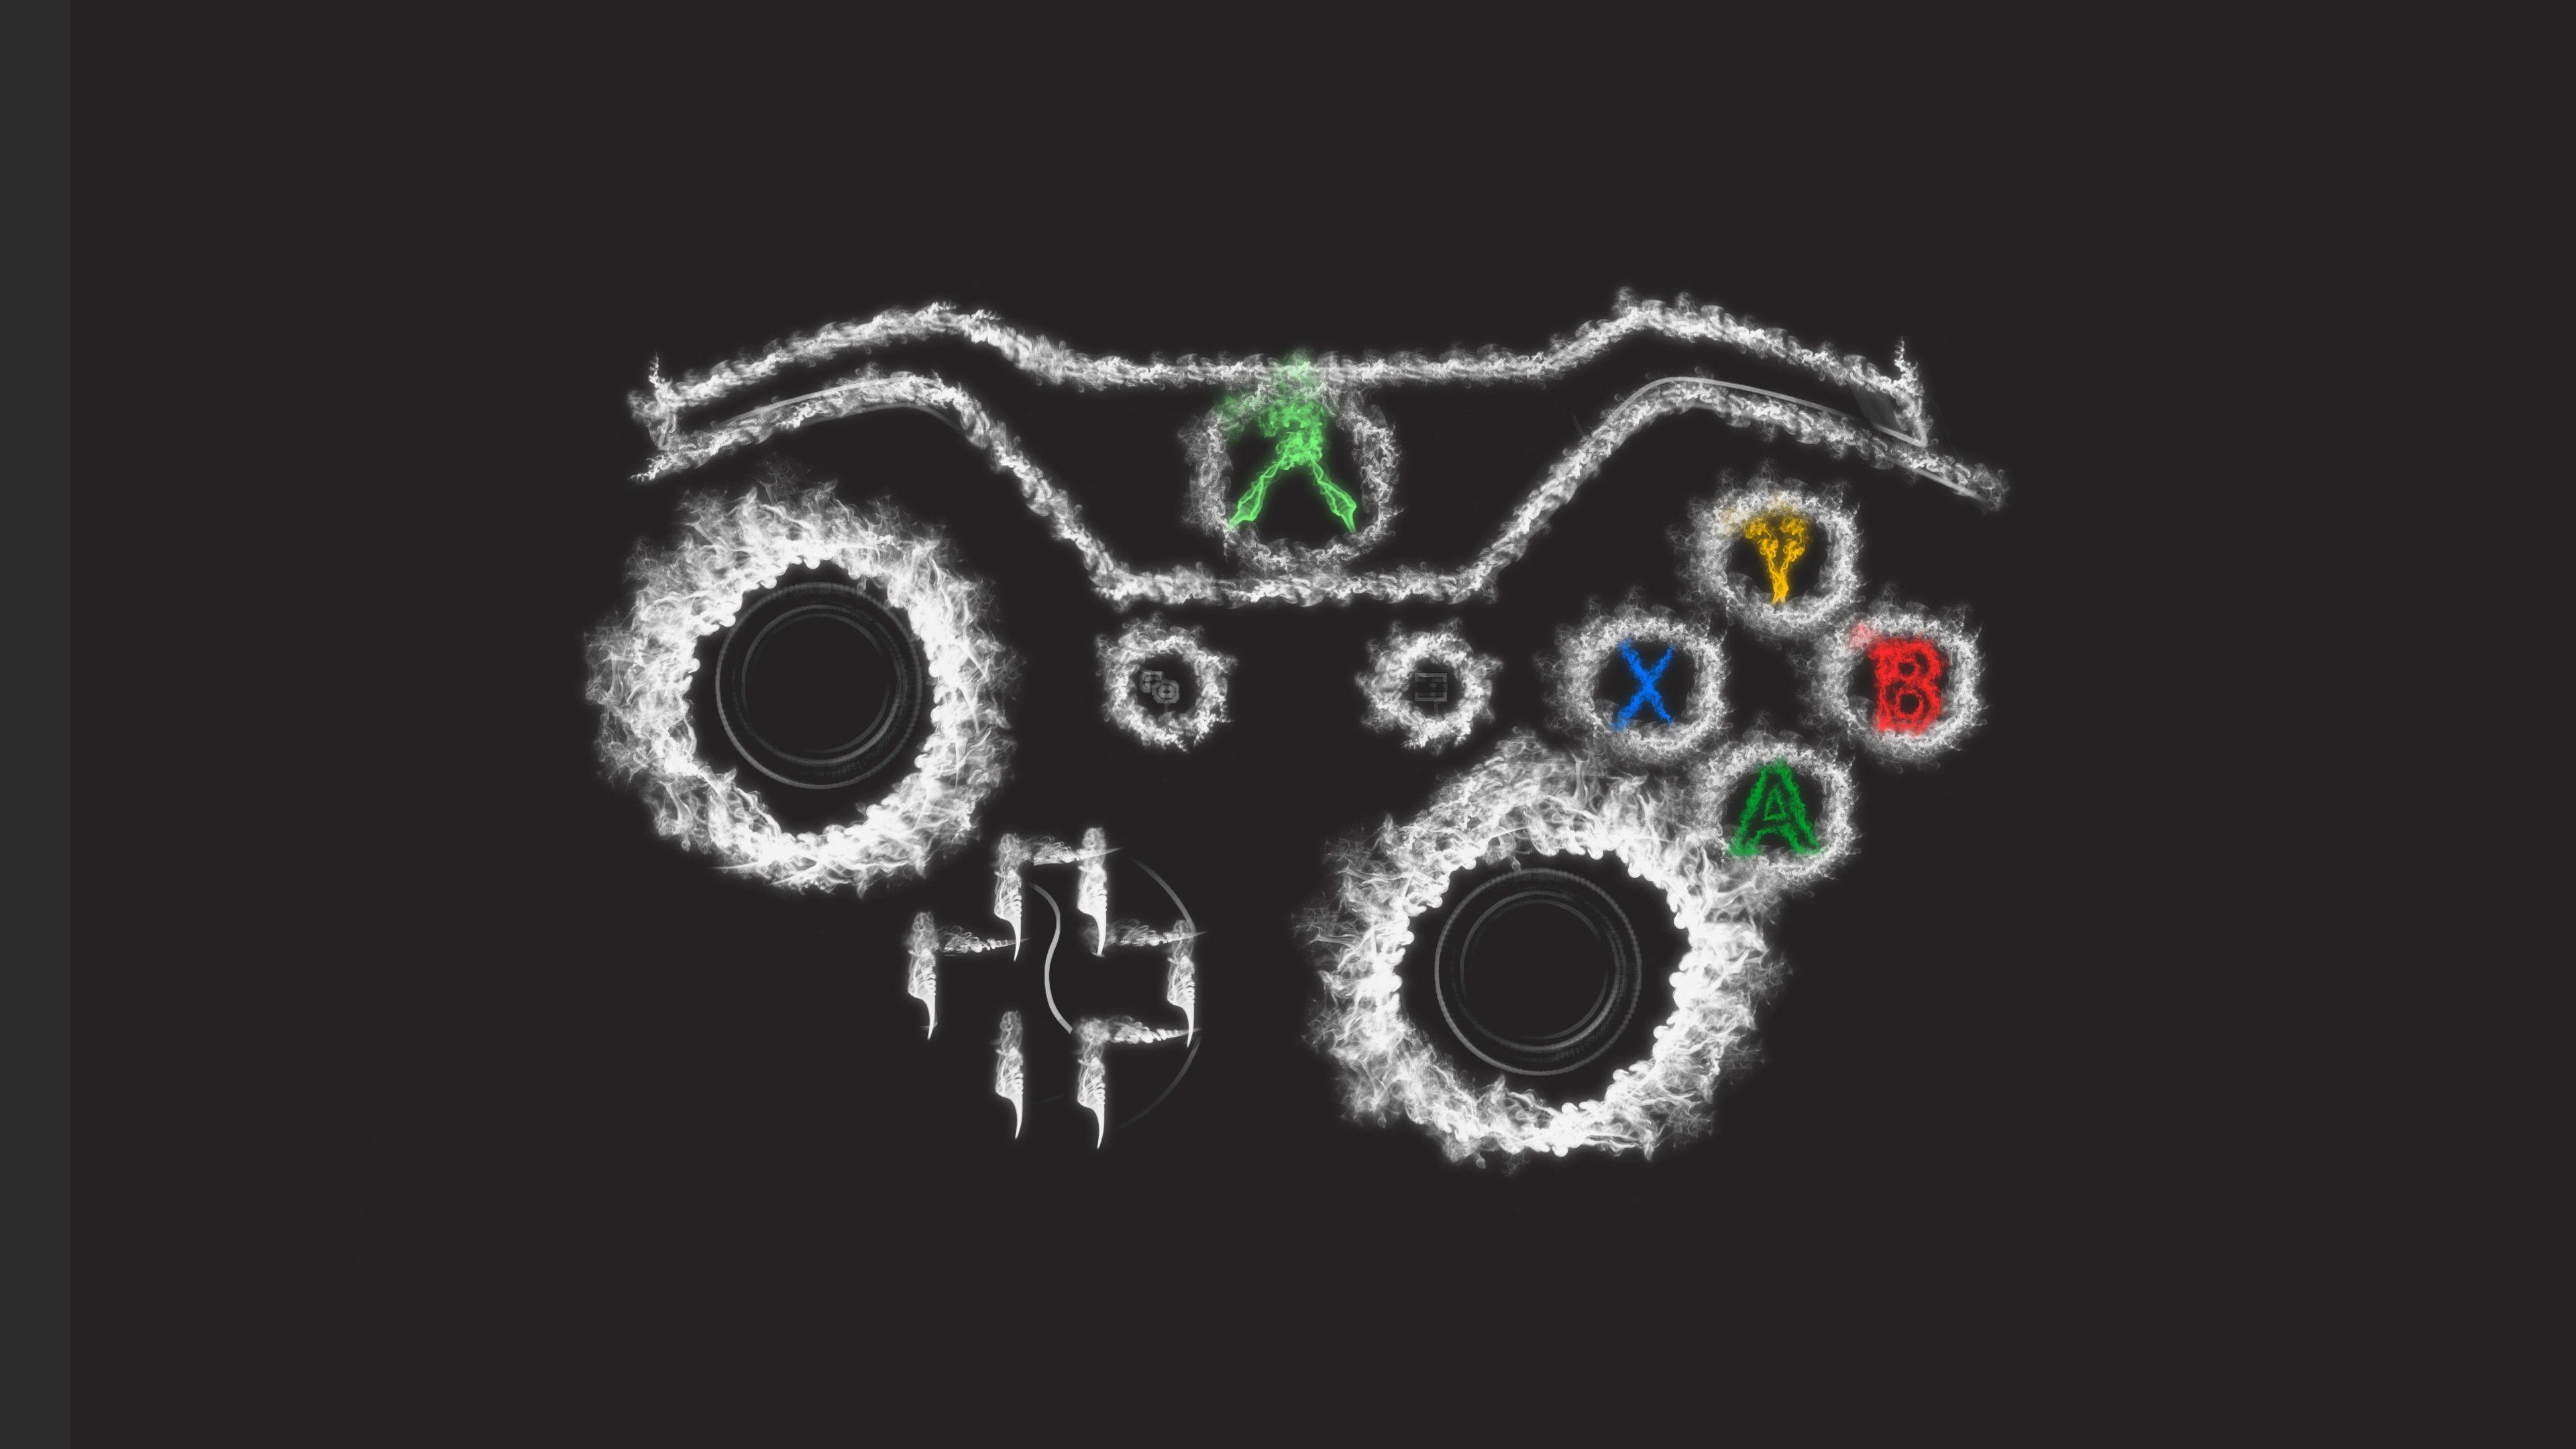 Xbox Controller Art 2048x1152 Resolution HD 4k Wallpaper